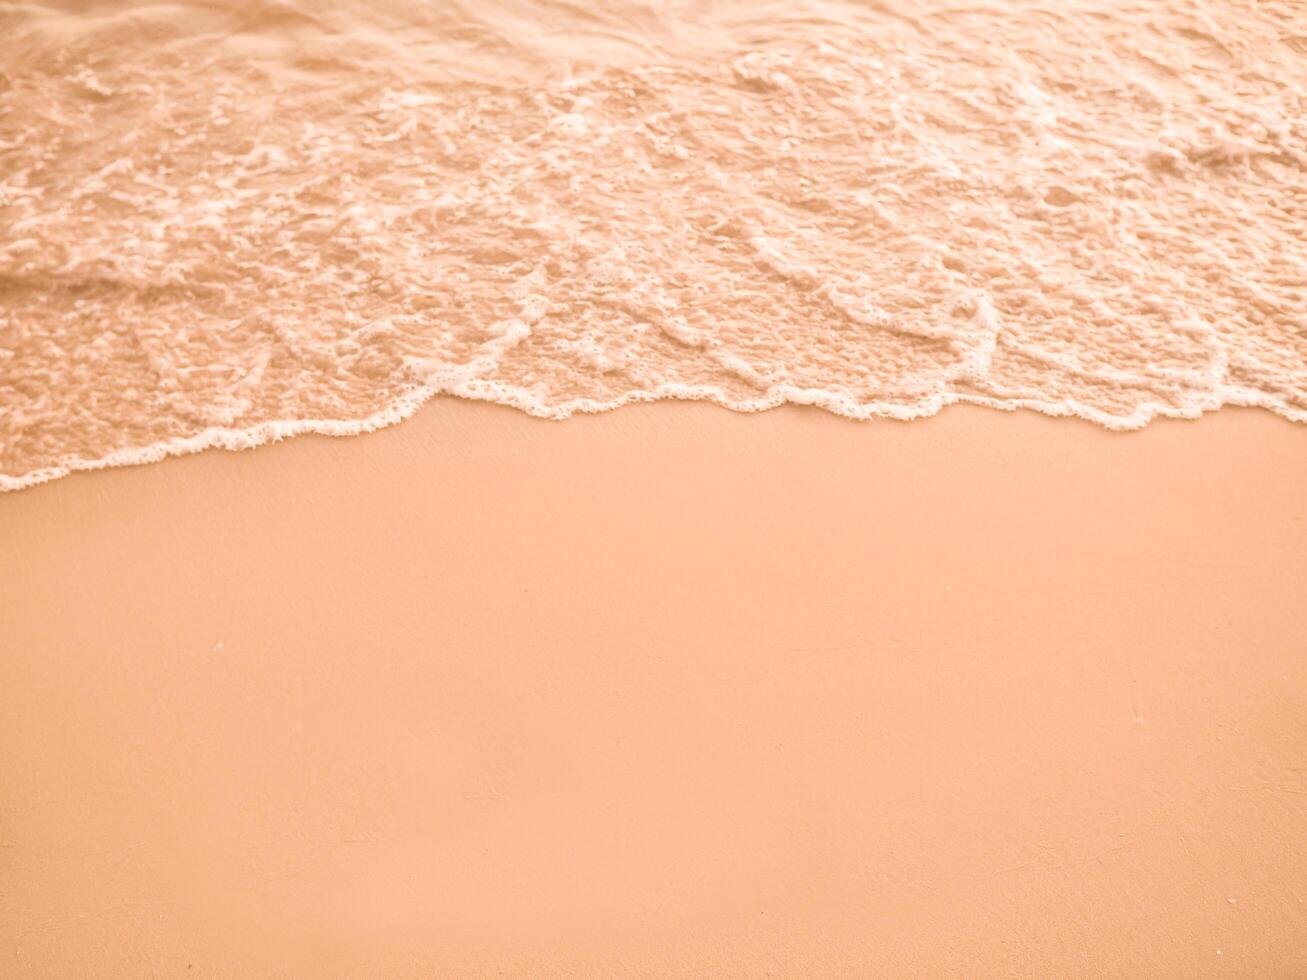 vatten och sand på de strand i solnedgång tid foto